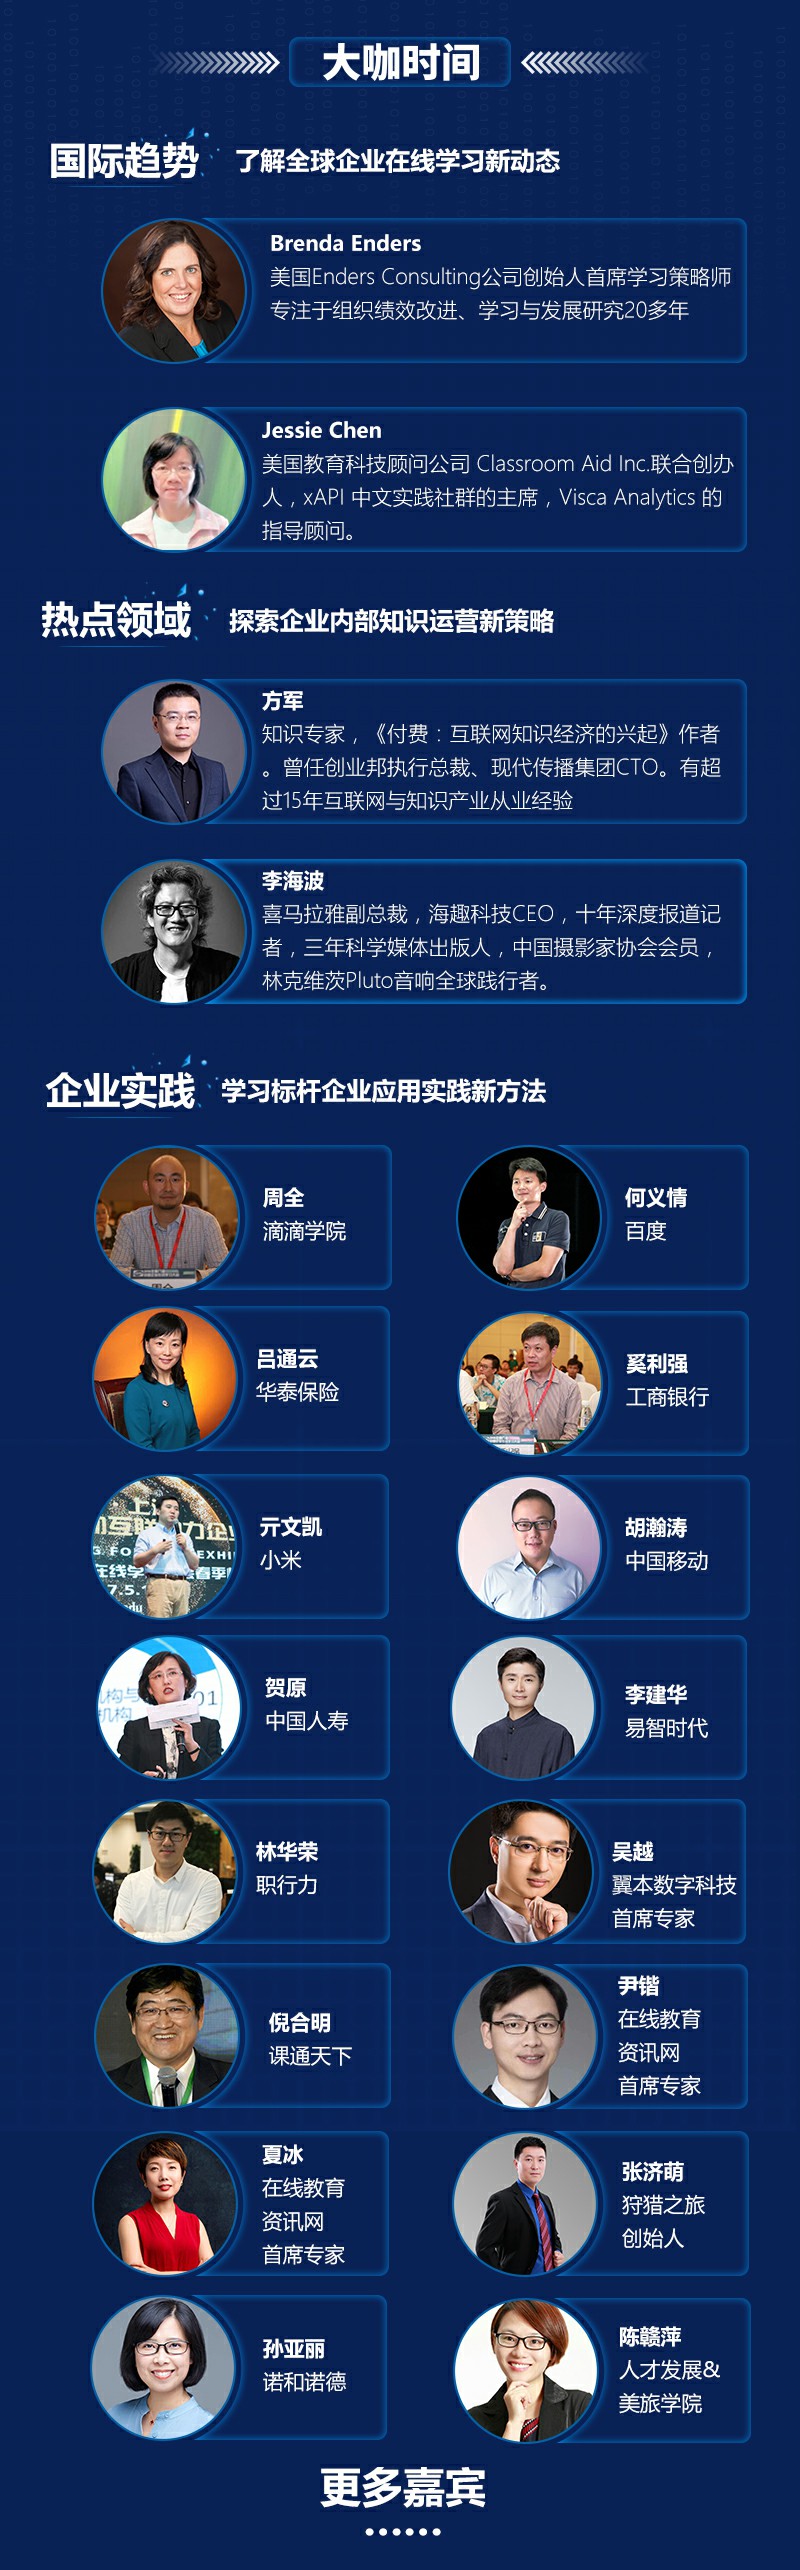 2017第九届中国企业在线学习大会（CEFE）年终盛典